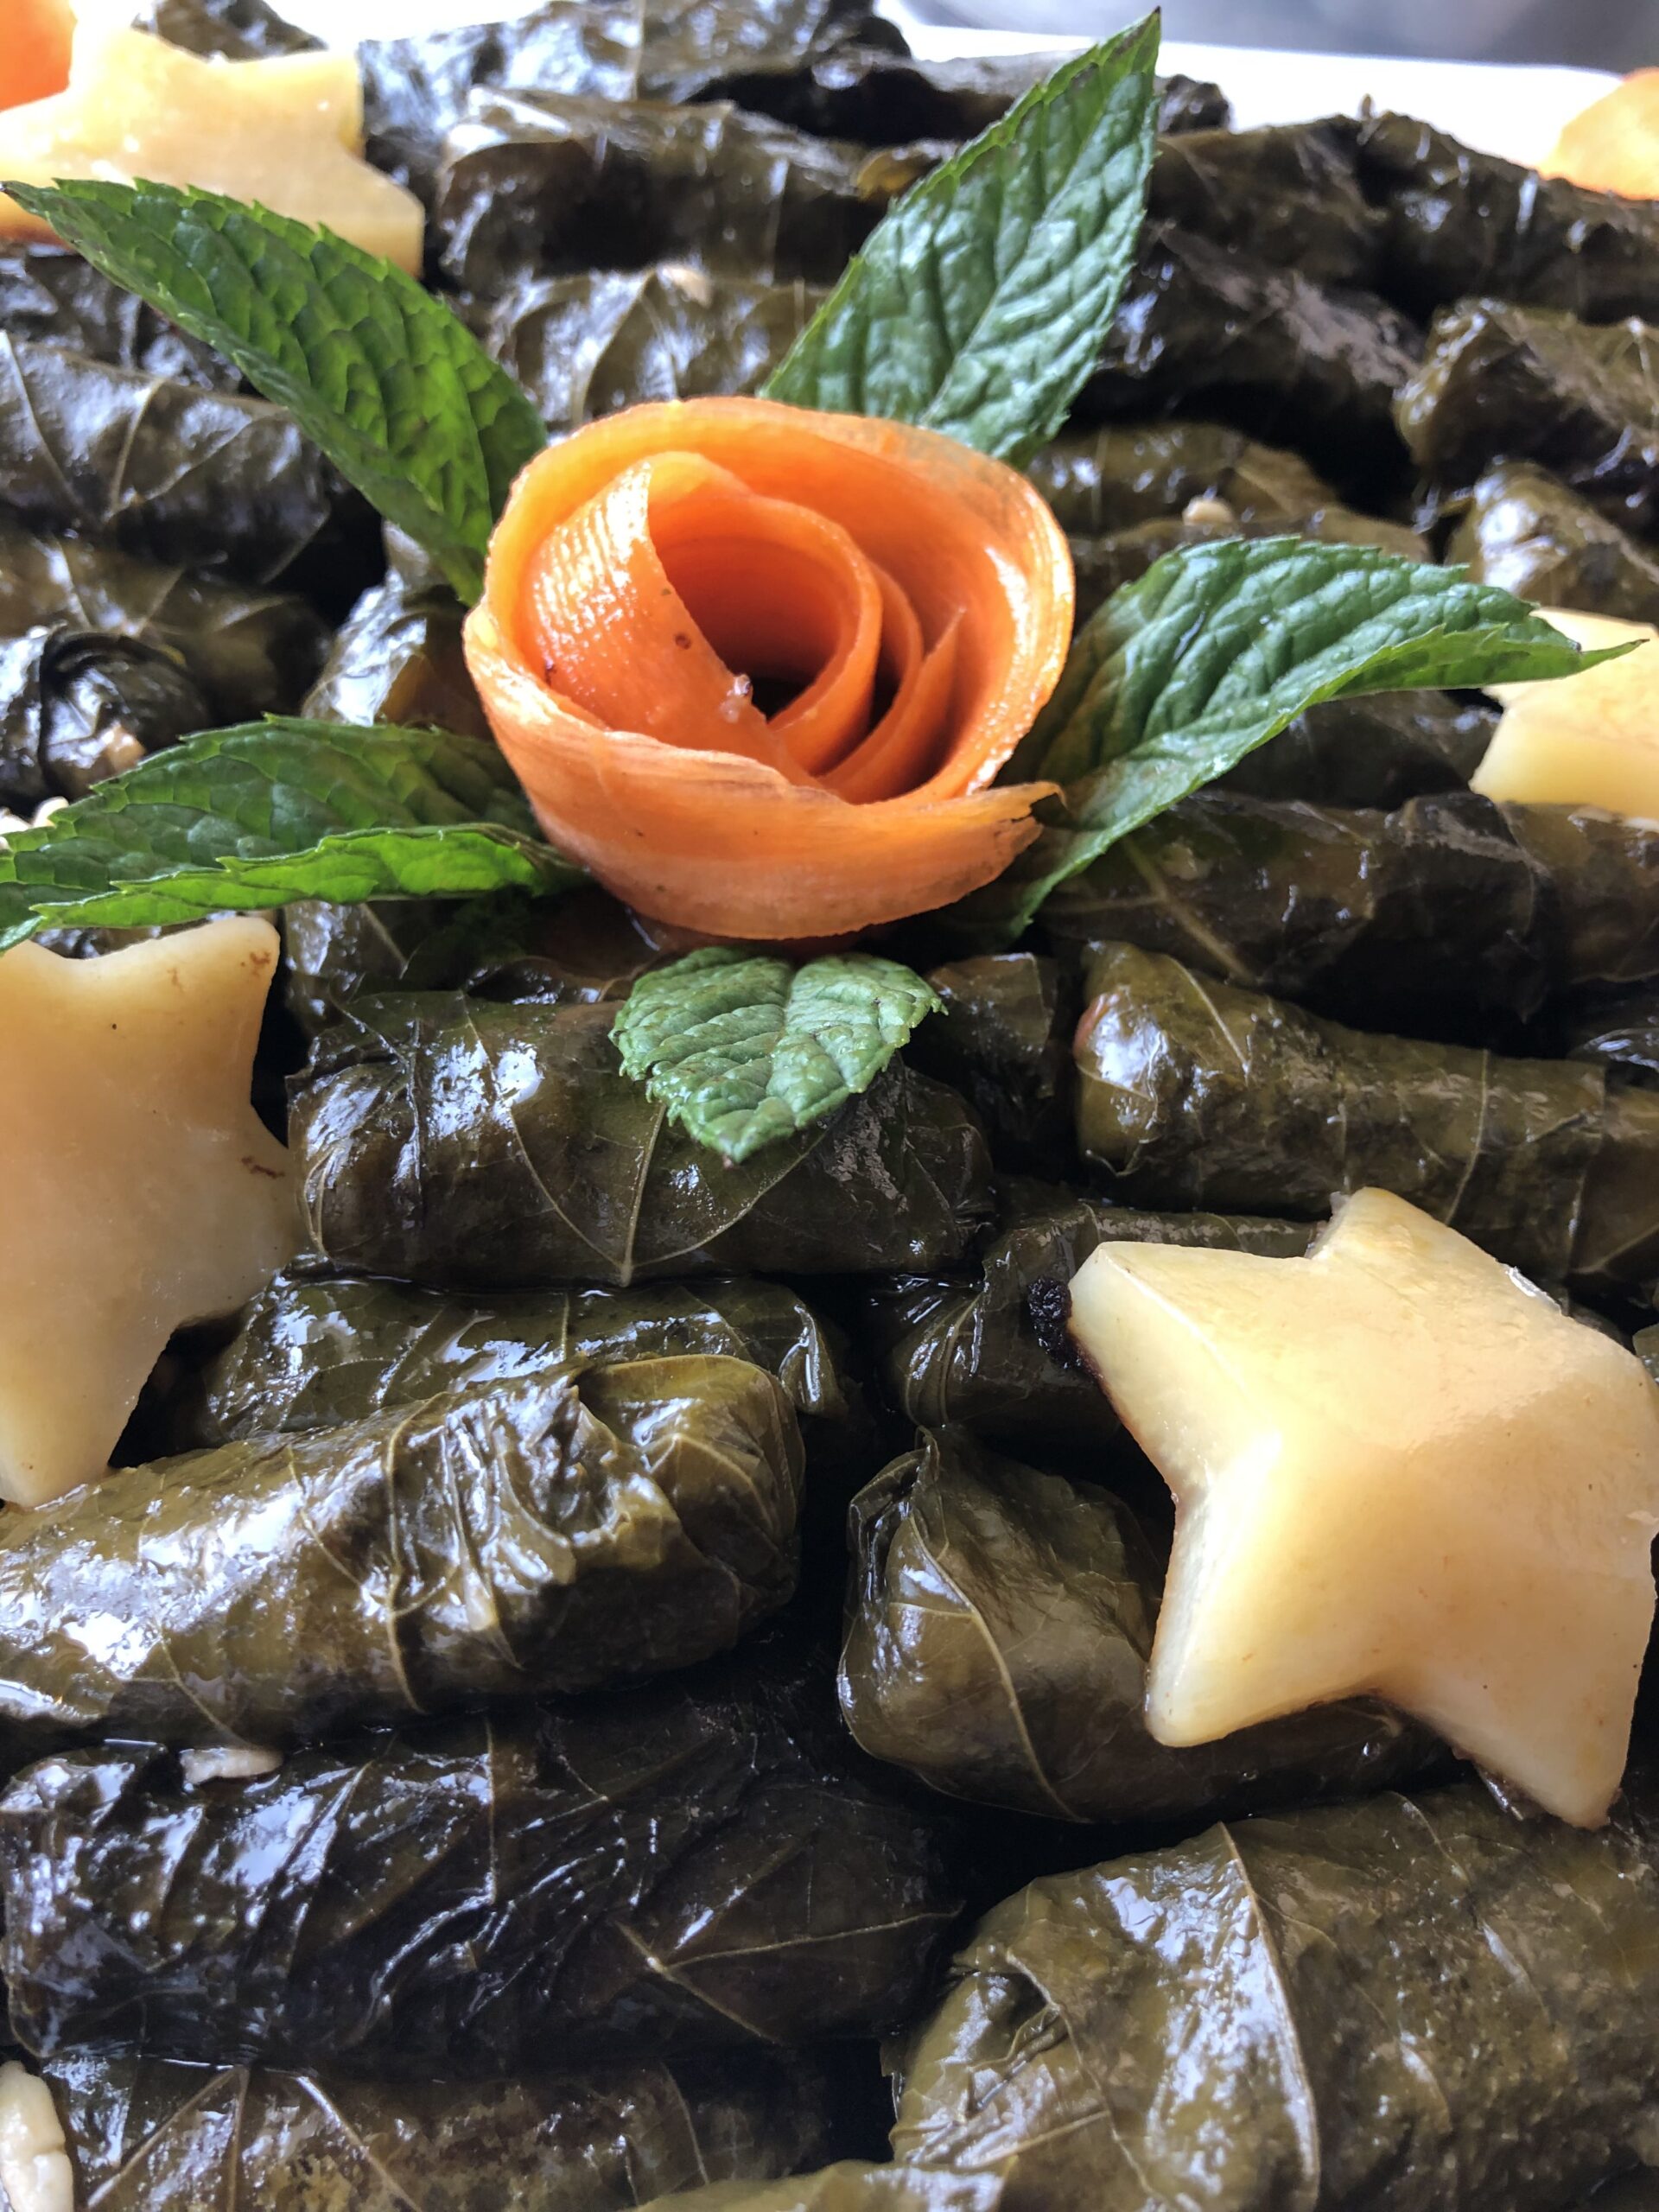 اكلات جاهزة للطبخ كافة انواع الاطباق السورية والاردنية